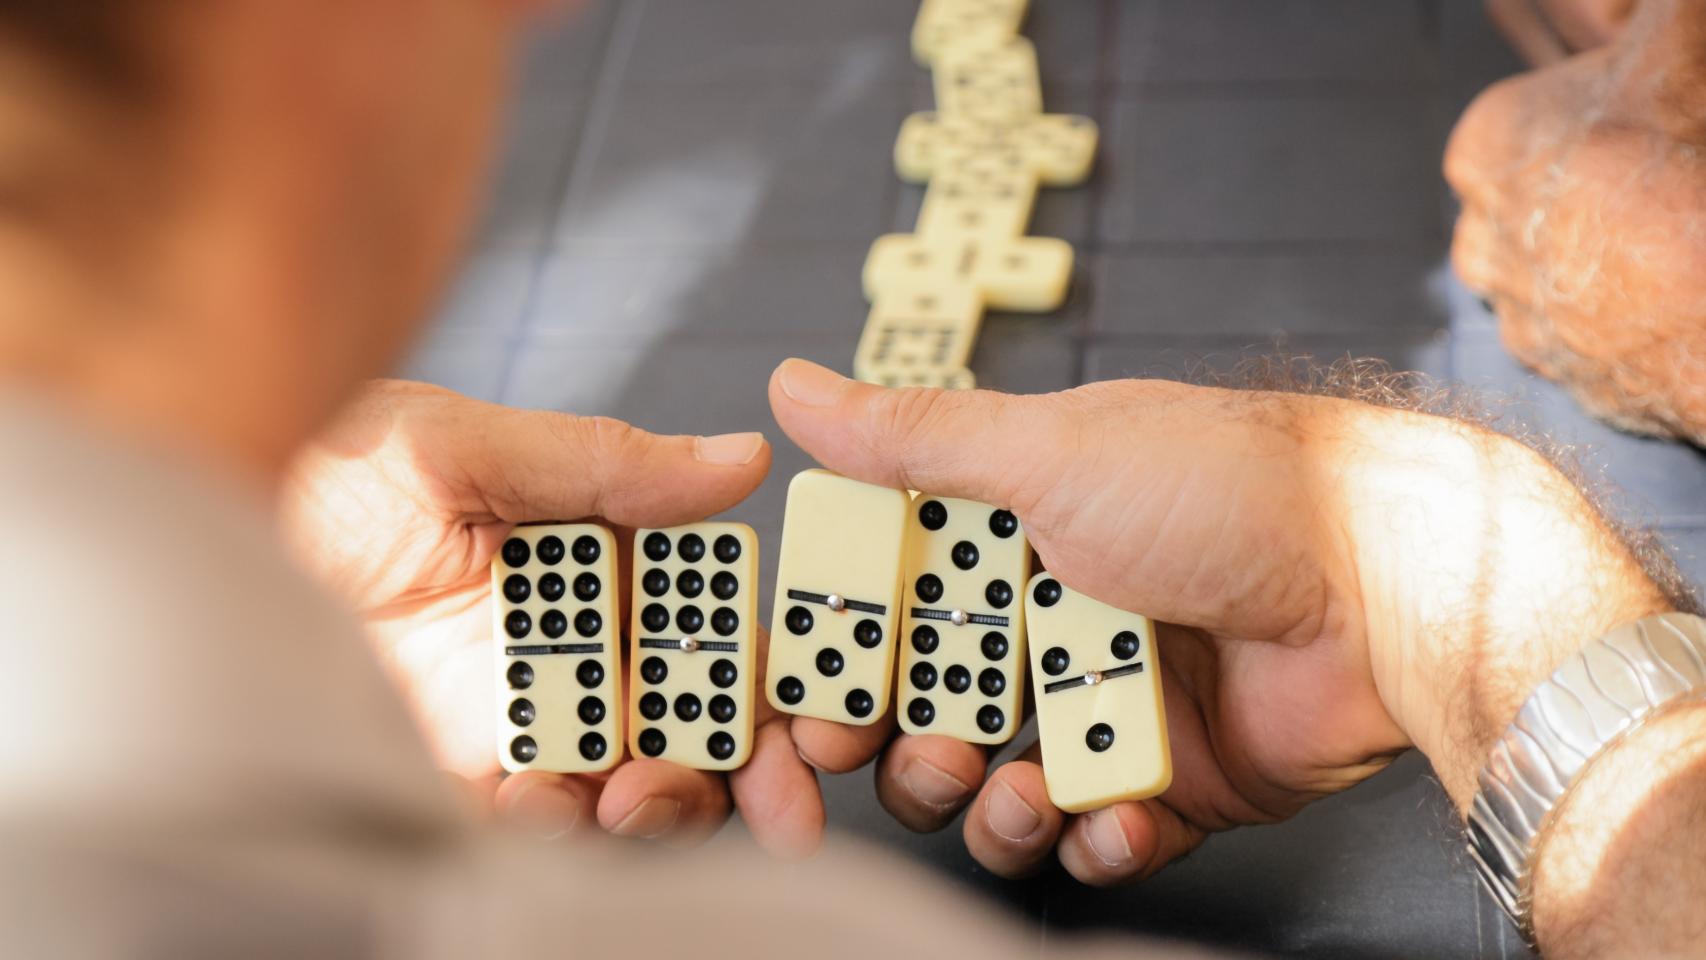 Una persone juega una partida de dominó en una imagen de archivo.